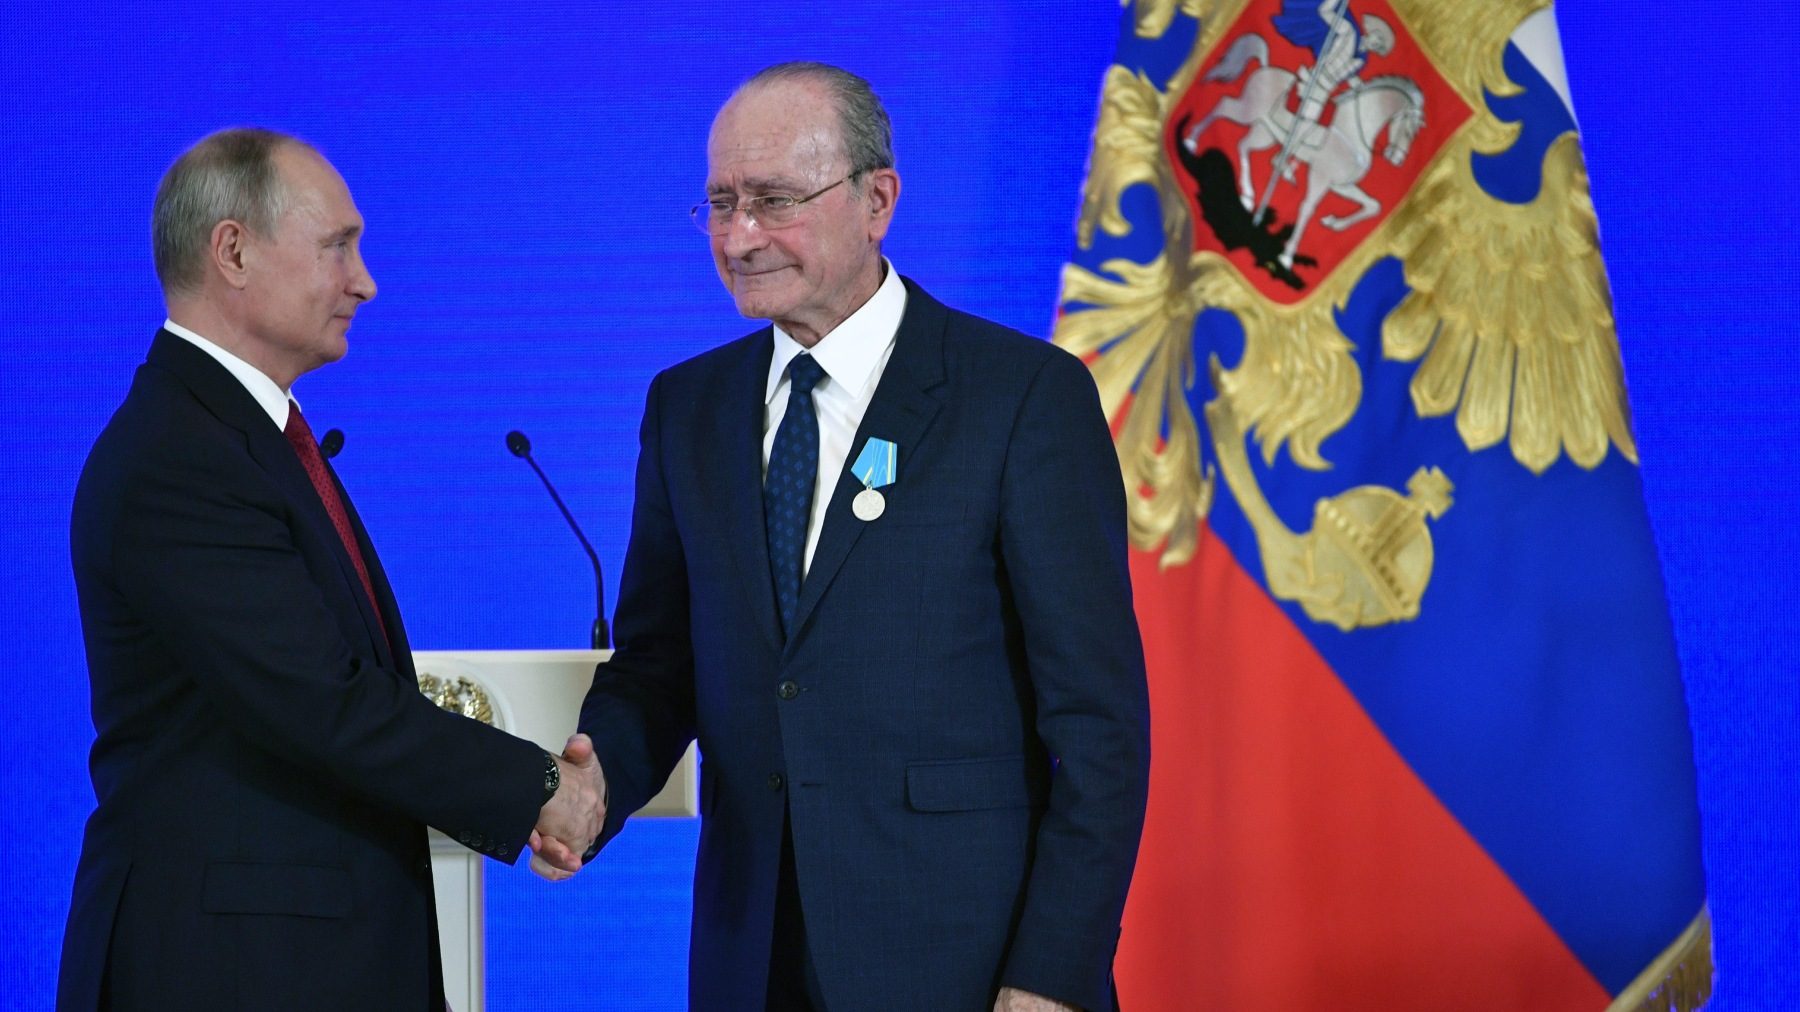 Vladimir Putin condecora al alcalde de Málaga durante una ceremonia en Moscú en noviembre de 2018 (EFE).